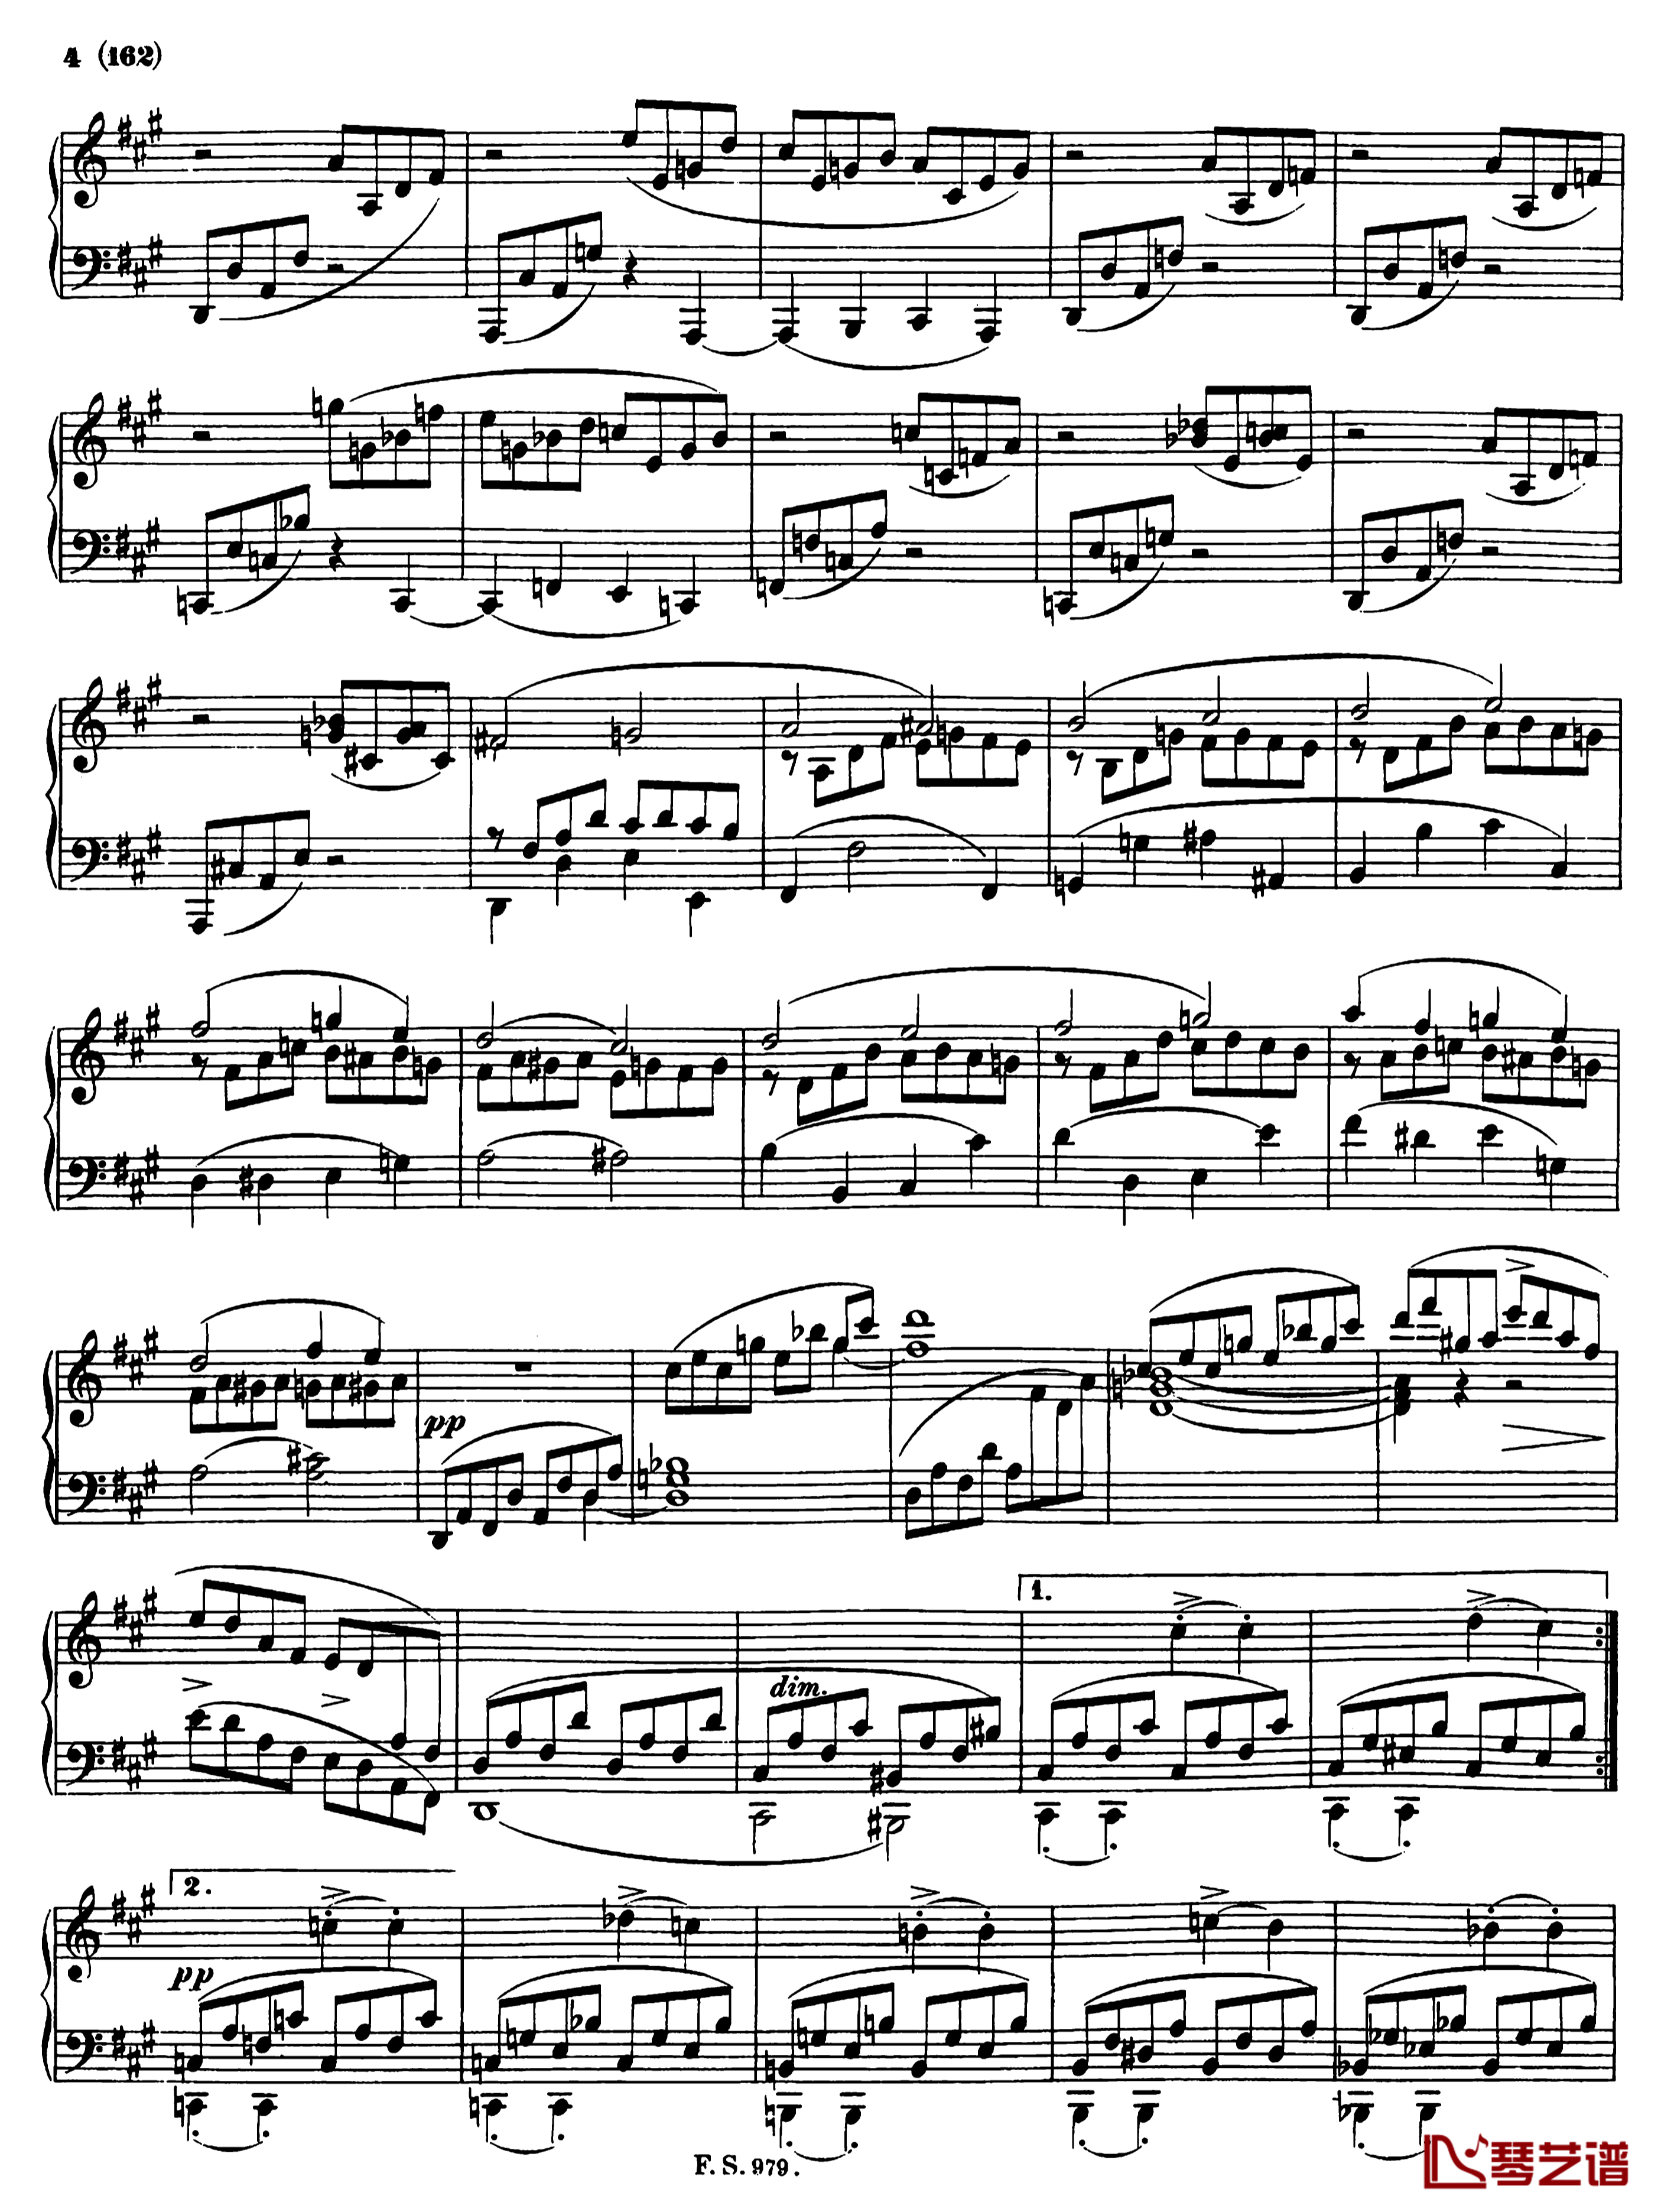 升f小调钢琴奏鸣曲D.571钢琴谱-李斯特-舒伯特3